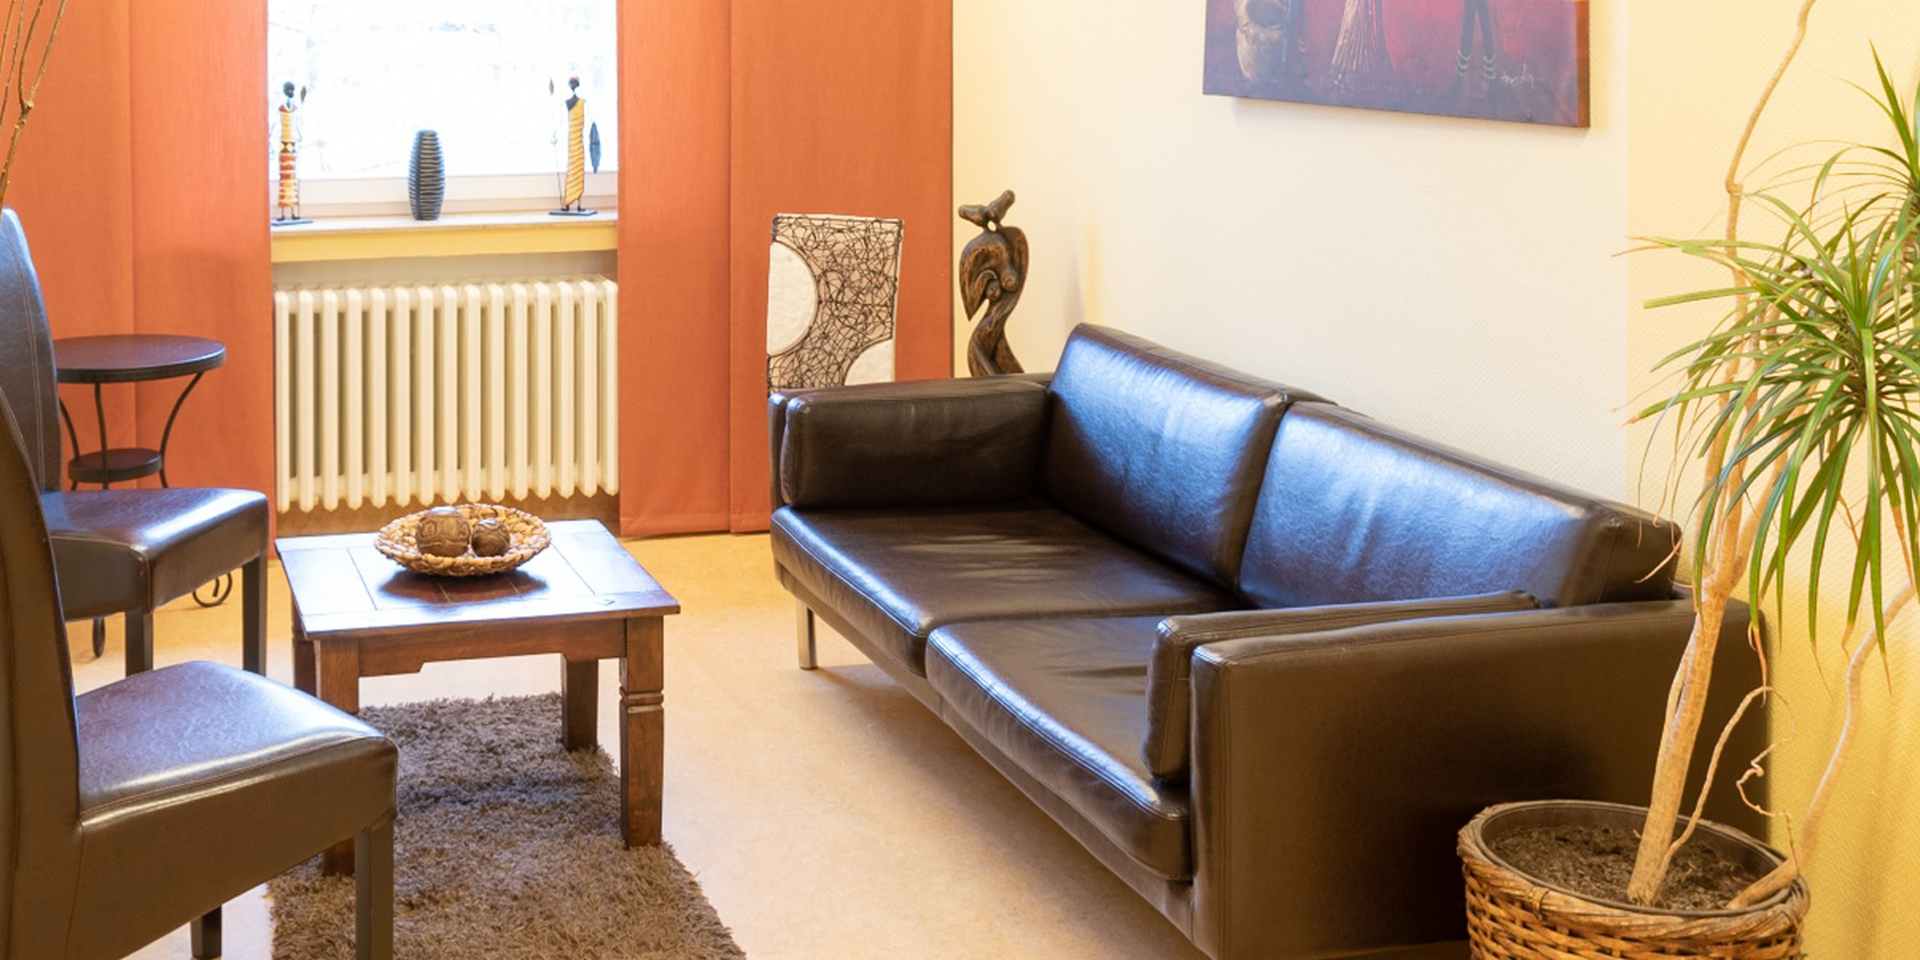 In dem warm gestalteten Therapieraum stehen ein braunes Ledersofa und braune Lederstühle sowie ein brauner Teppich und eine grüne Pflanze.